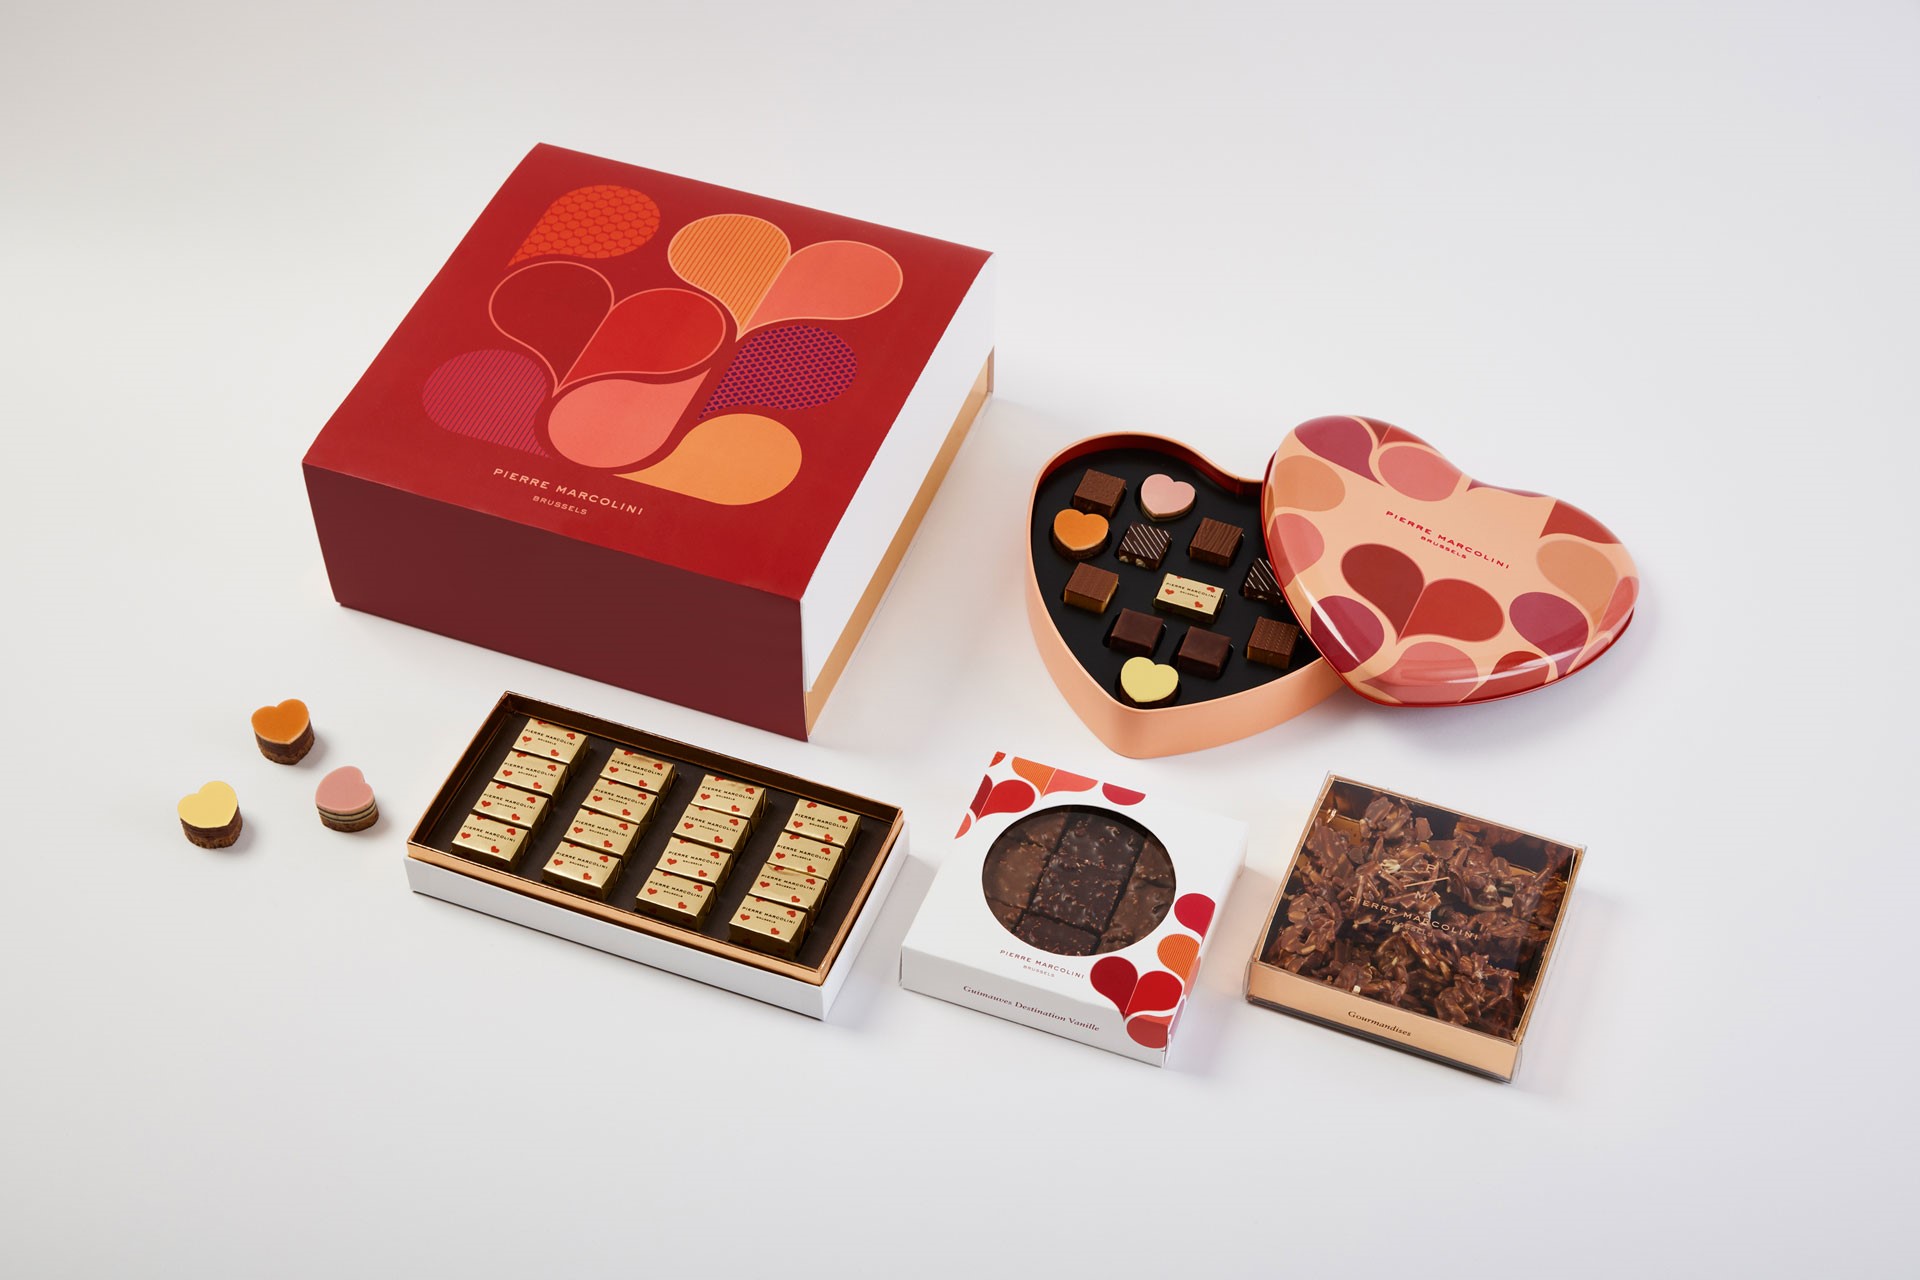 A box of Pierre Marcolini Valentine's chocolates